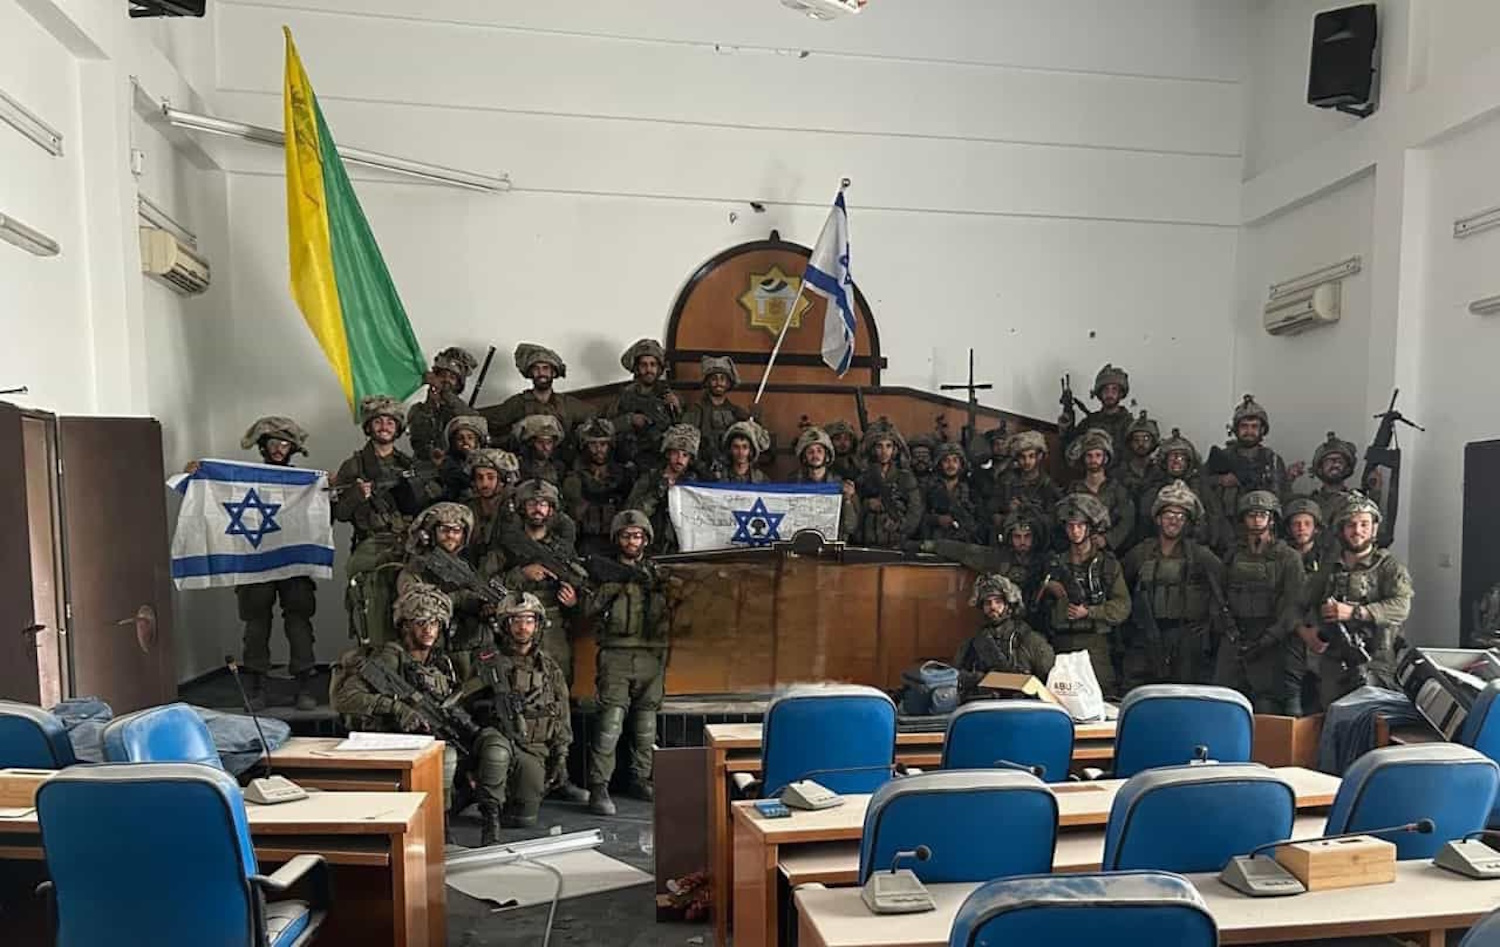 Μέση Ανατολή: Ο στρατός του Ισραήλ μπήκε στο κοινοβούλιο της Γάζας